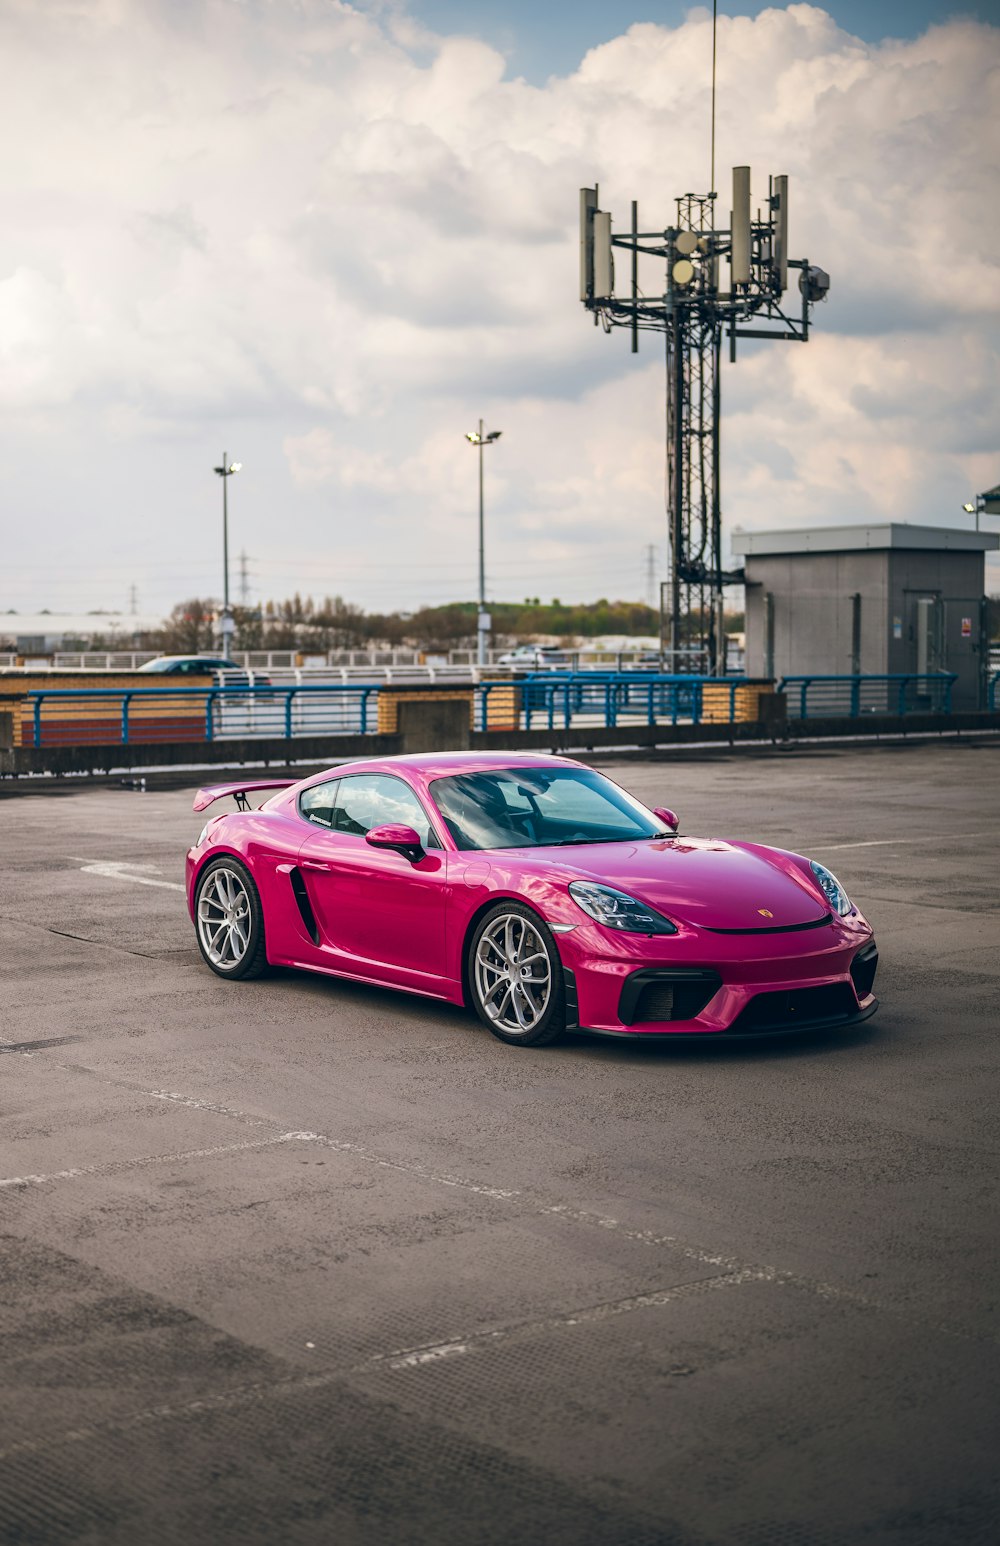 ein pinkfarbener Sportwagen, der auf einem Parkplatz geparkt ist